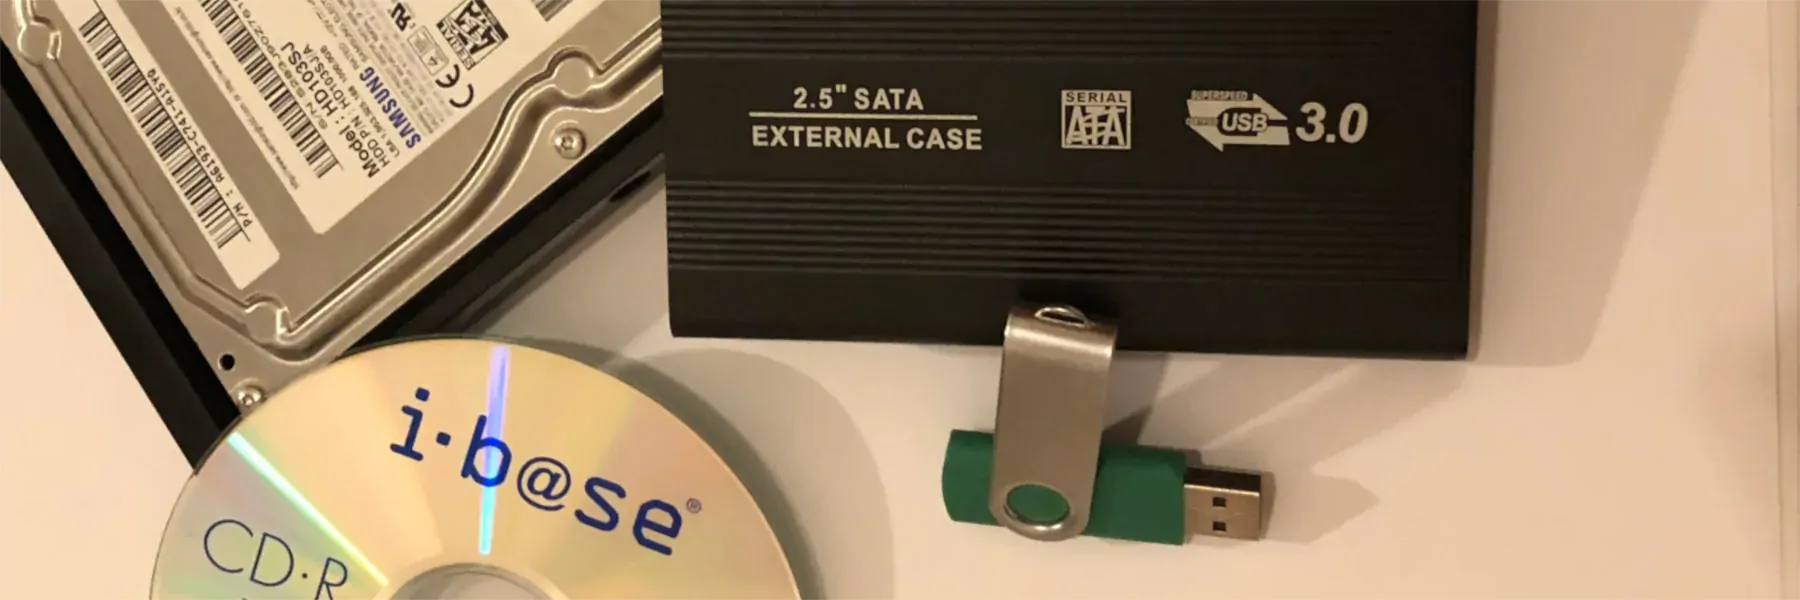 CD USB-Stick Festplatte und externe Festplatte